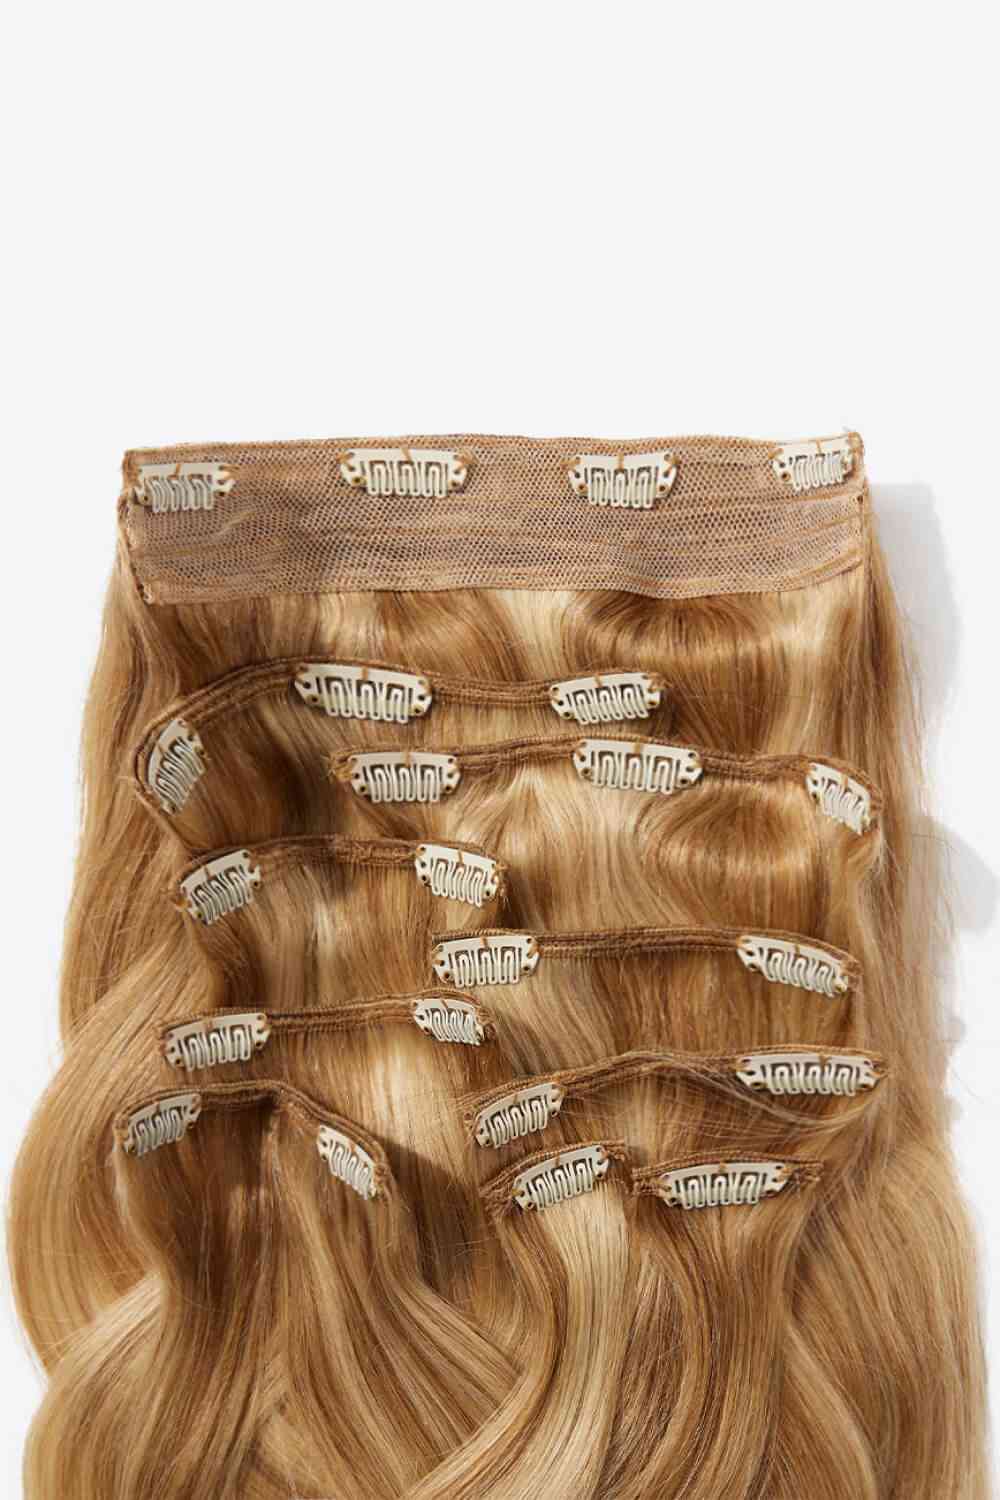 Virgin Human Hair Extensions | 16” | Light Brown & Blonde Highlights